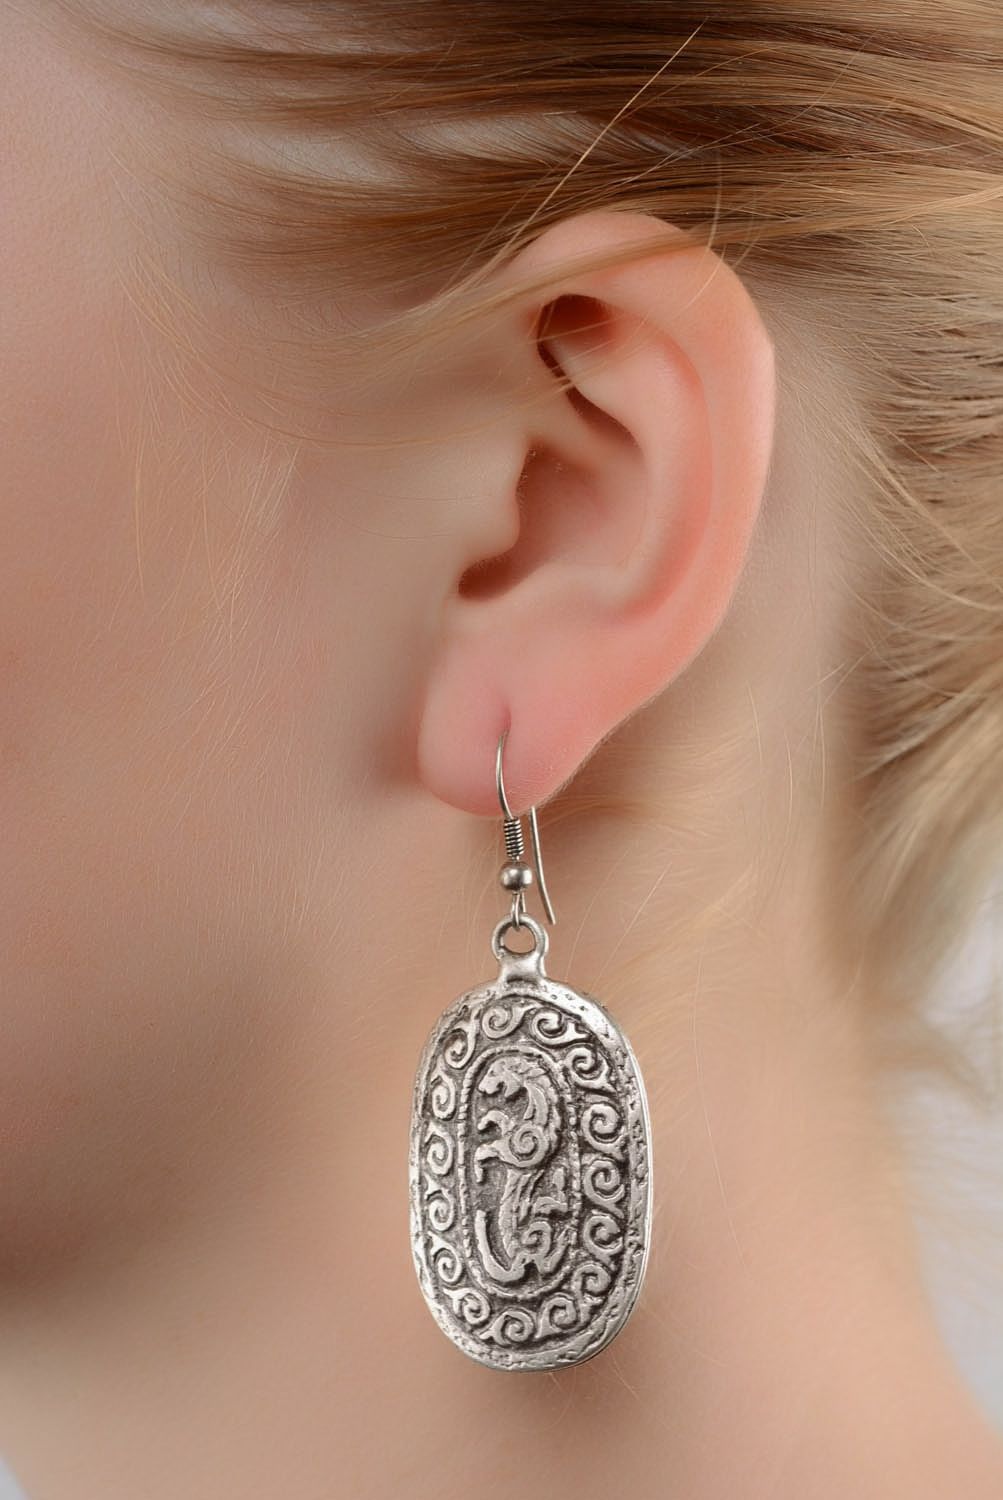 Lange Ohrringe aus Metall foto 4